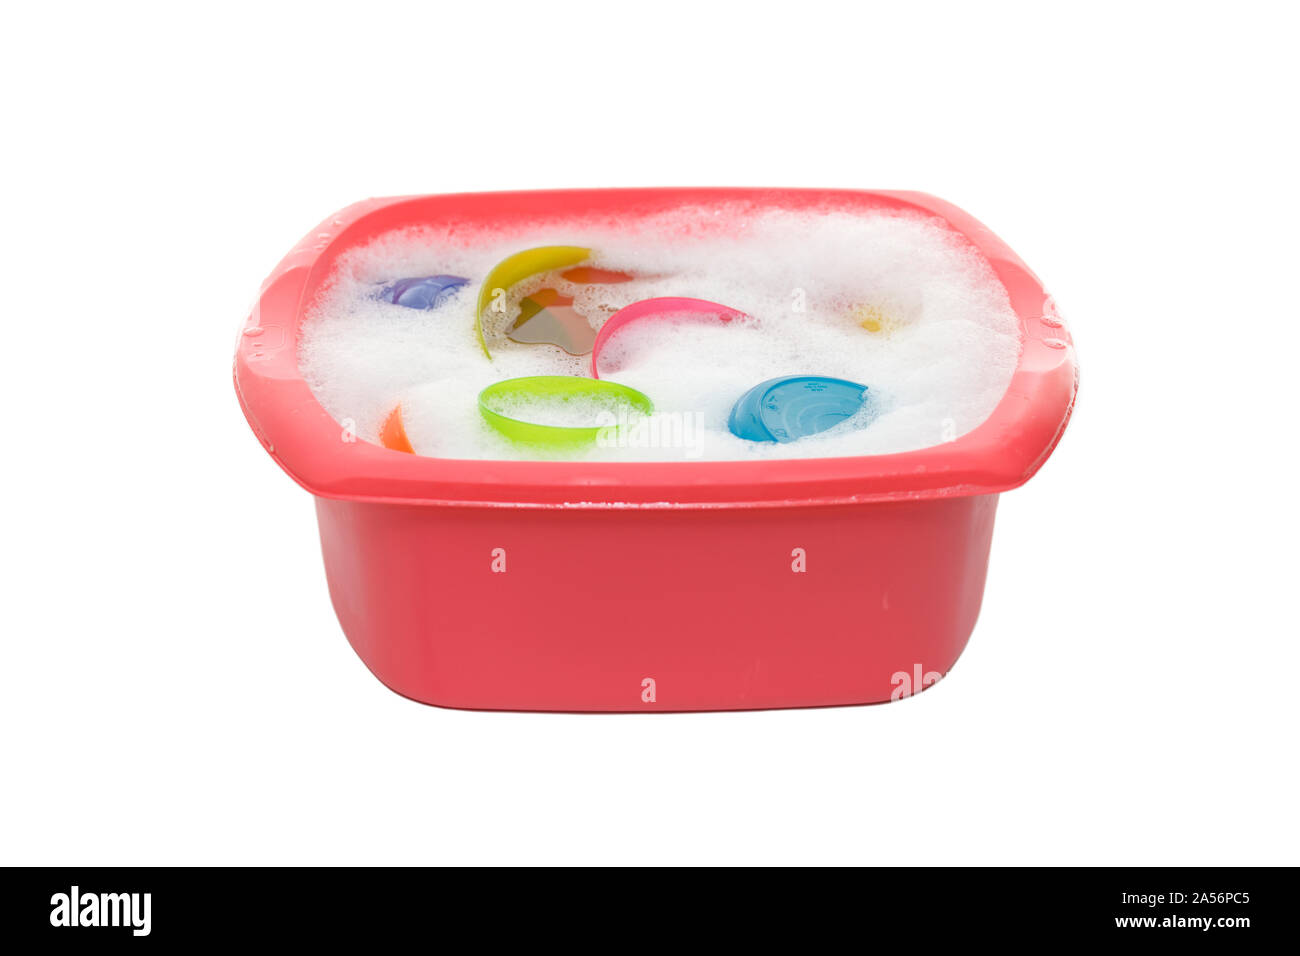 Pink washing up bowl on isolated white background Stock Photo